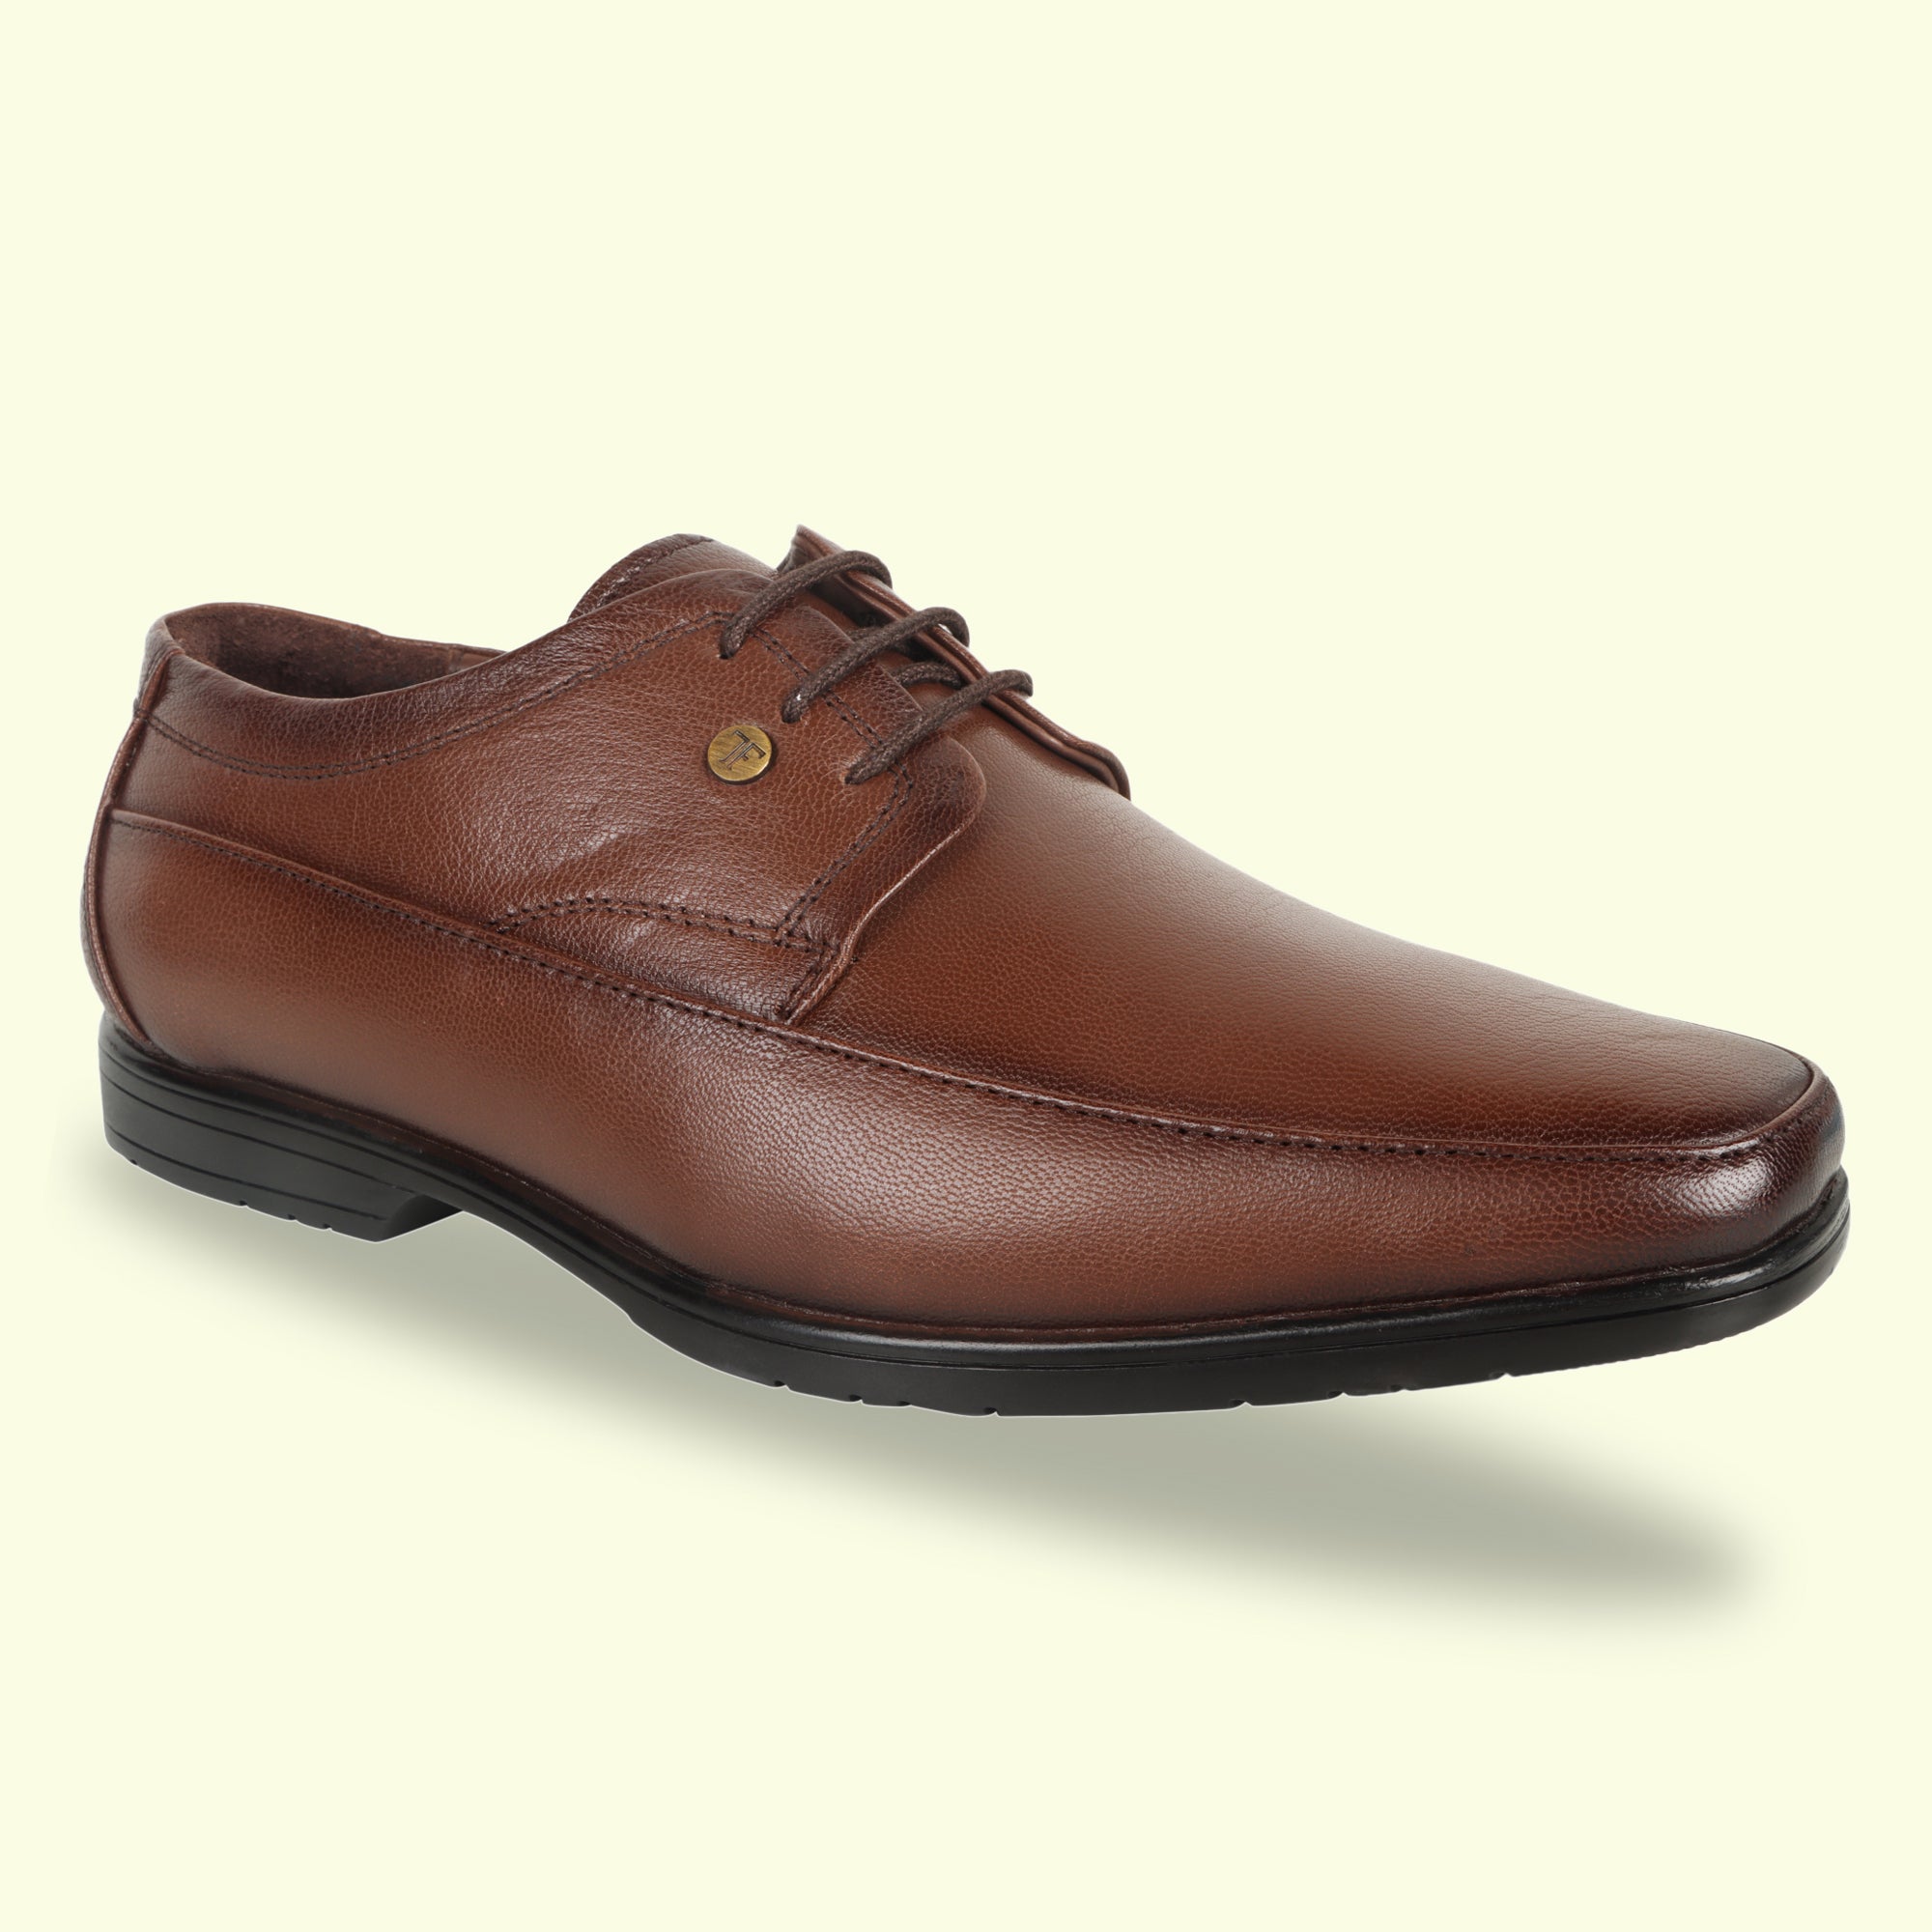 TRUDGE Brown Formal Shoe For Men - 5029